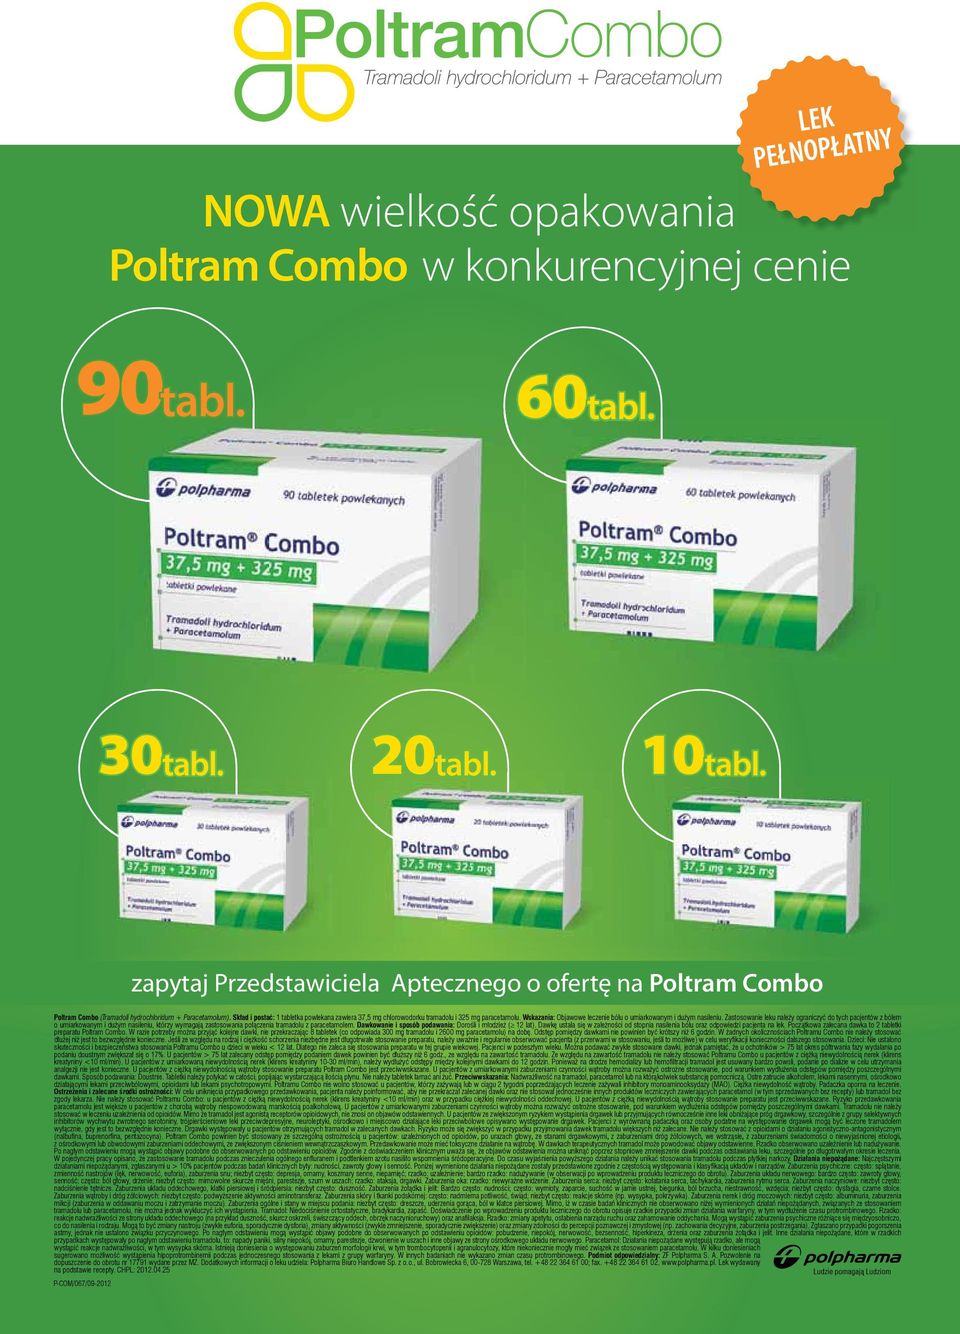 Skład i postać: 1 tabletka powlekana zawiera 37,5 mg chlorowodorku tramadolu i 325 mg paracetamolu. Wskazania: Objawowe leczenie bólu o umiarkowanym i dużym nasileniu.